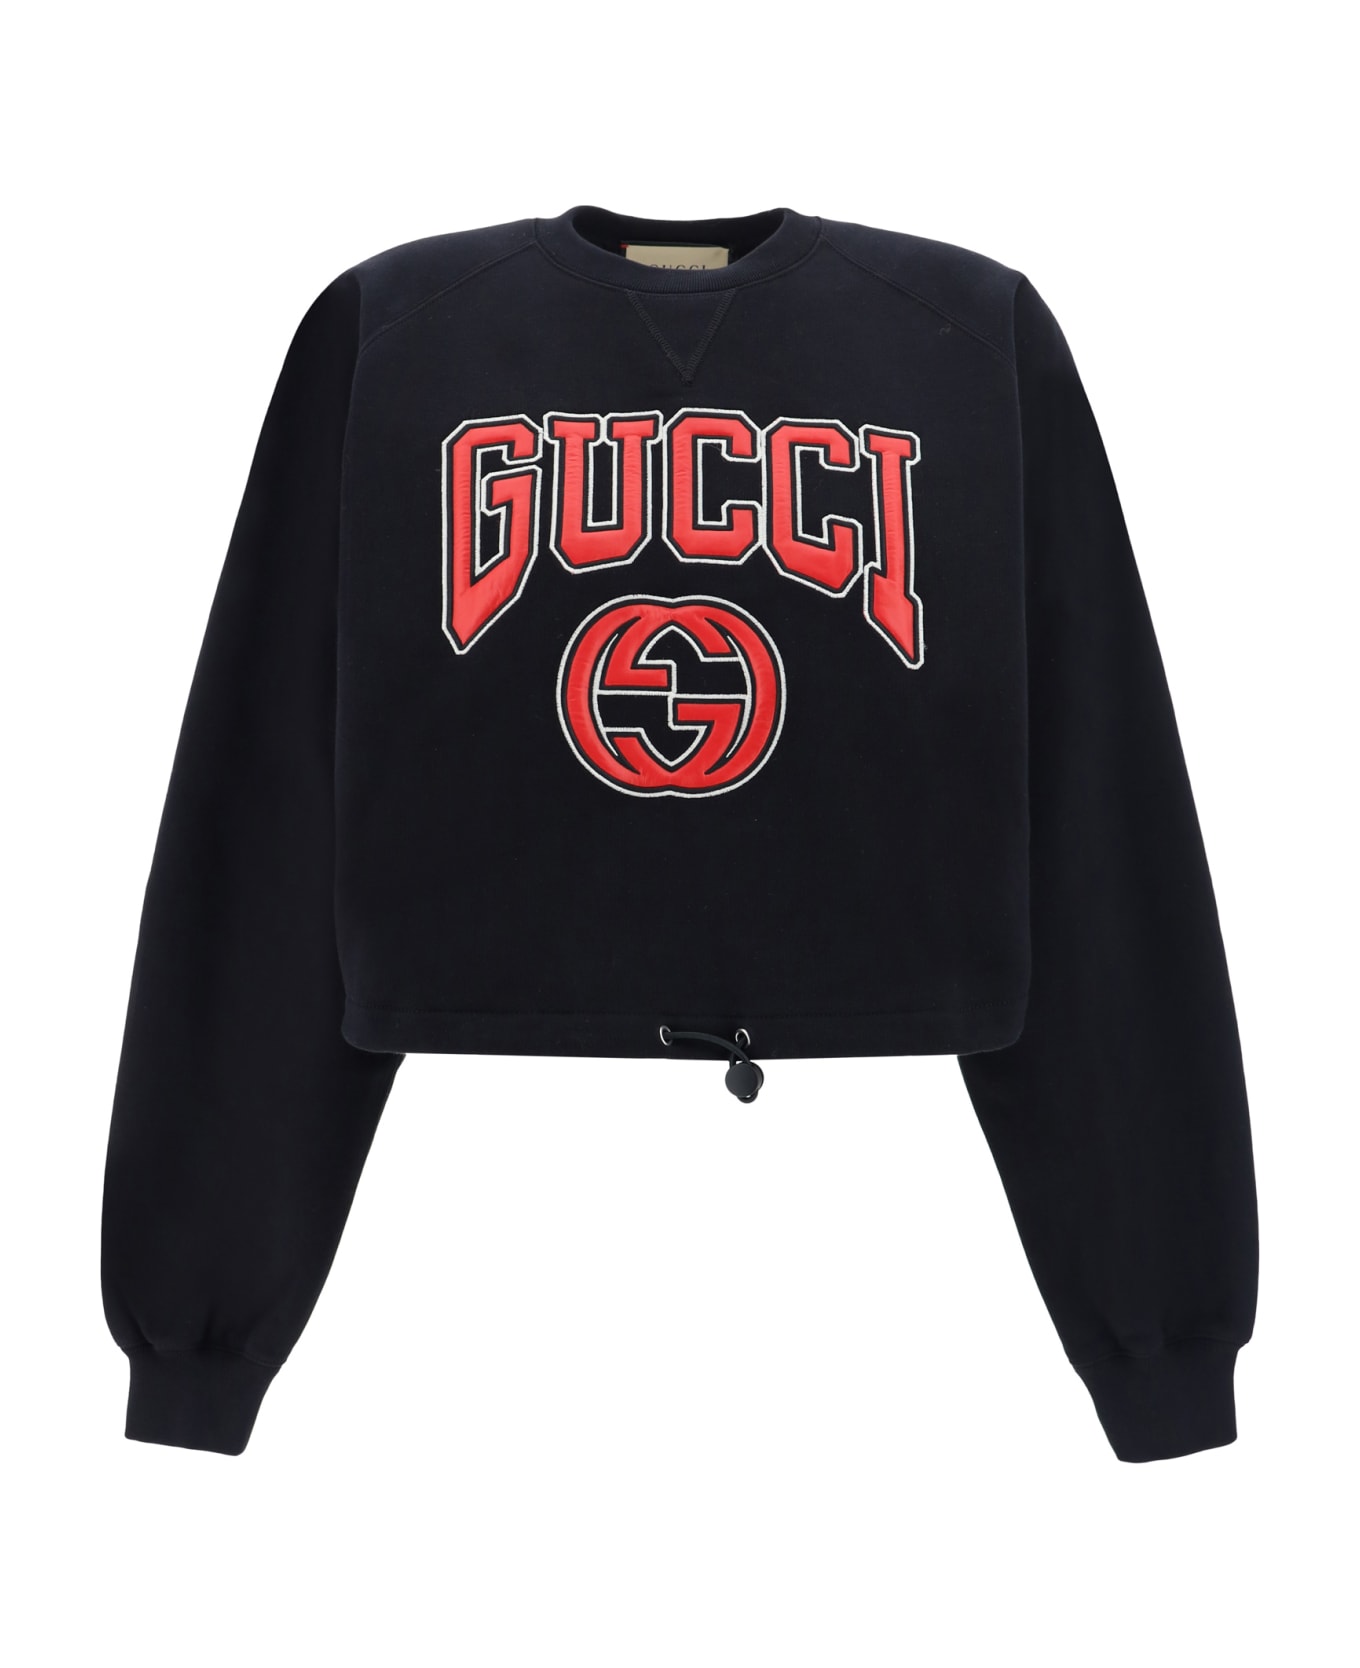 Gucci Sweatshirt - Black/mix フリース